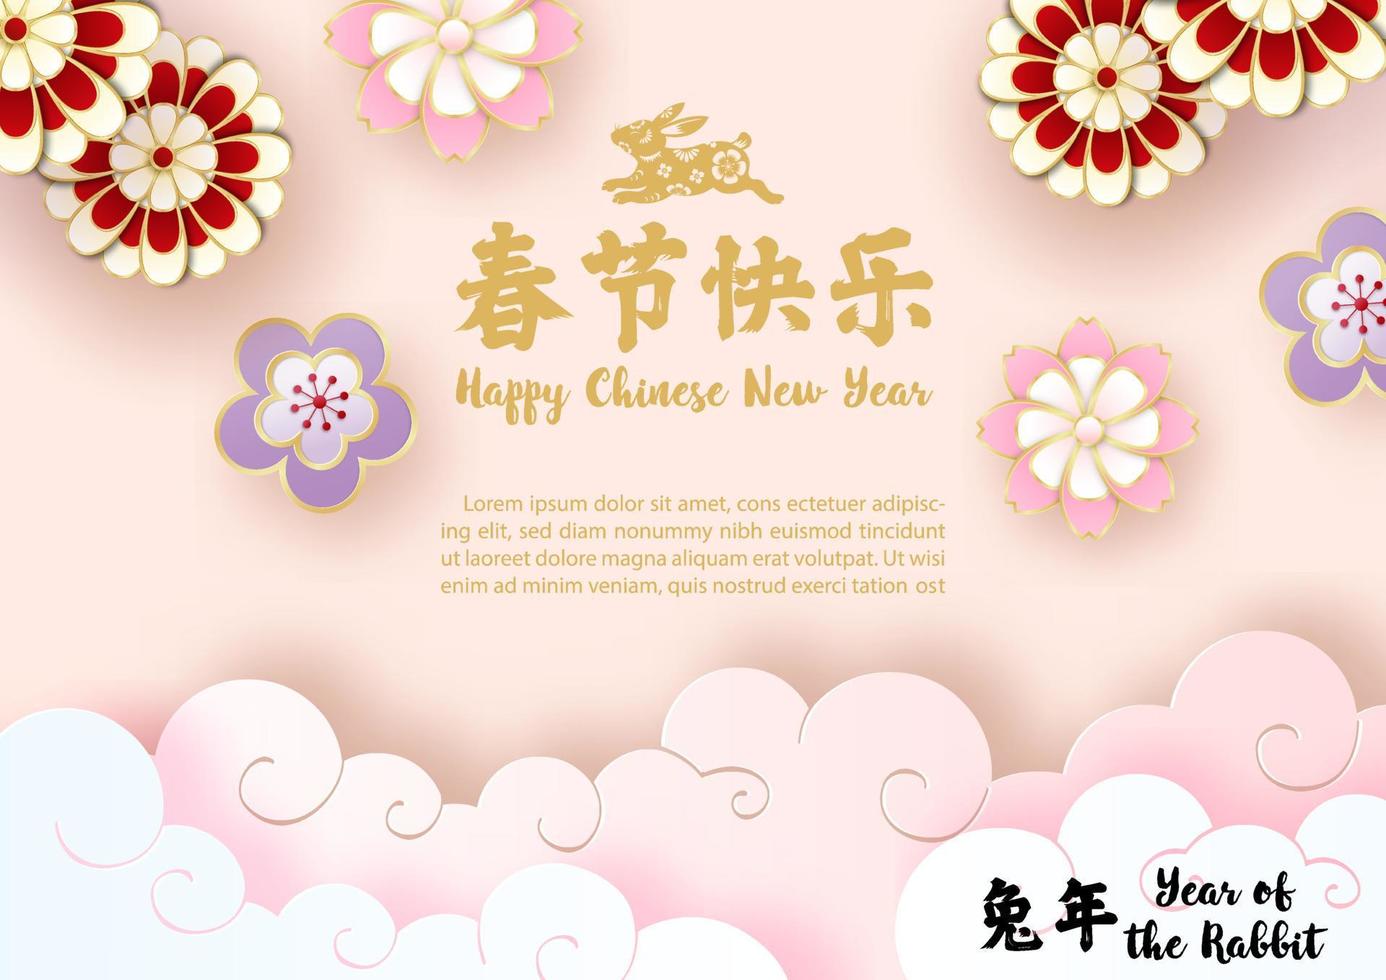 cartão de saudação do ano novo chinês e cartaz do ano do coelho em corte de papel e design vetorial. letras chinesas significa feliz ano novo chinês em inglês vetor